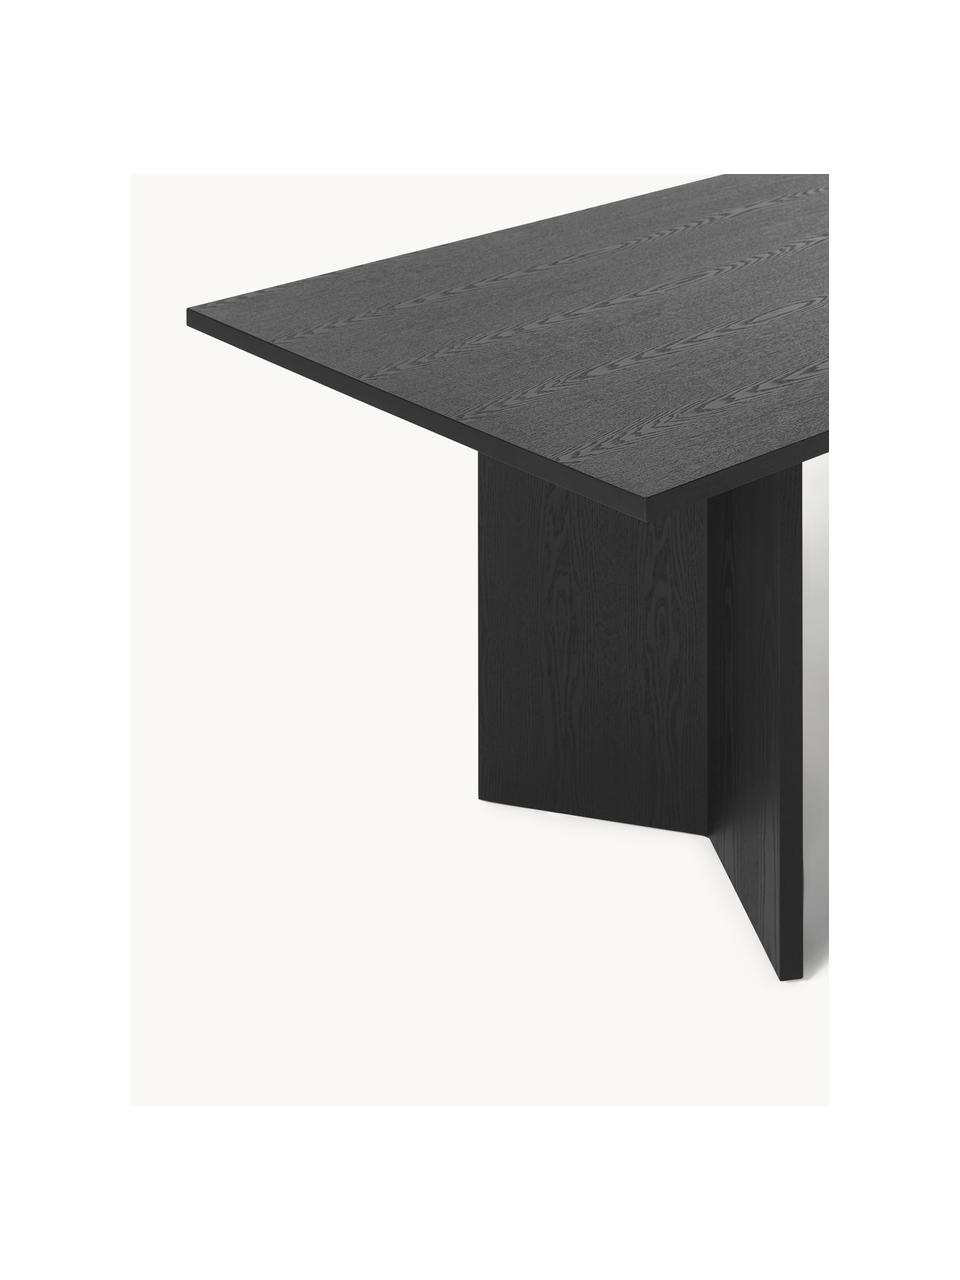 Jedálenský stôl Toni, 200 x 90 cm, MDF-doska strednej hustoty s dubovou dyhou, lakovaná, Dubové drevo, čierna lakovaná, Š 200 x V 75 cm